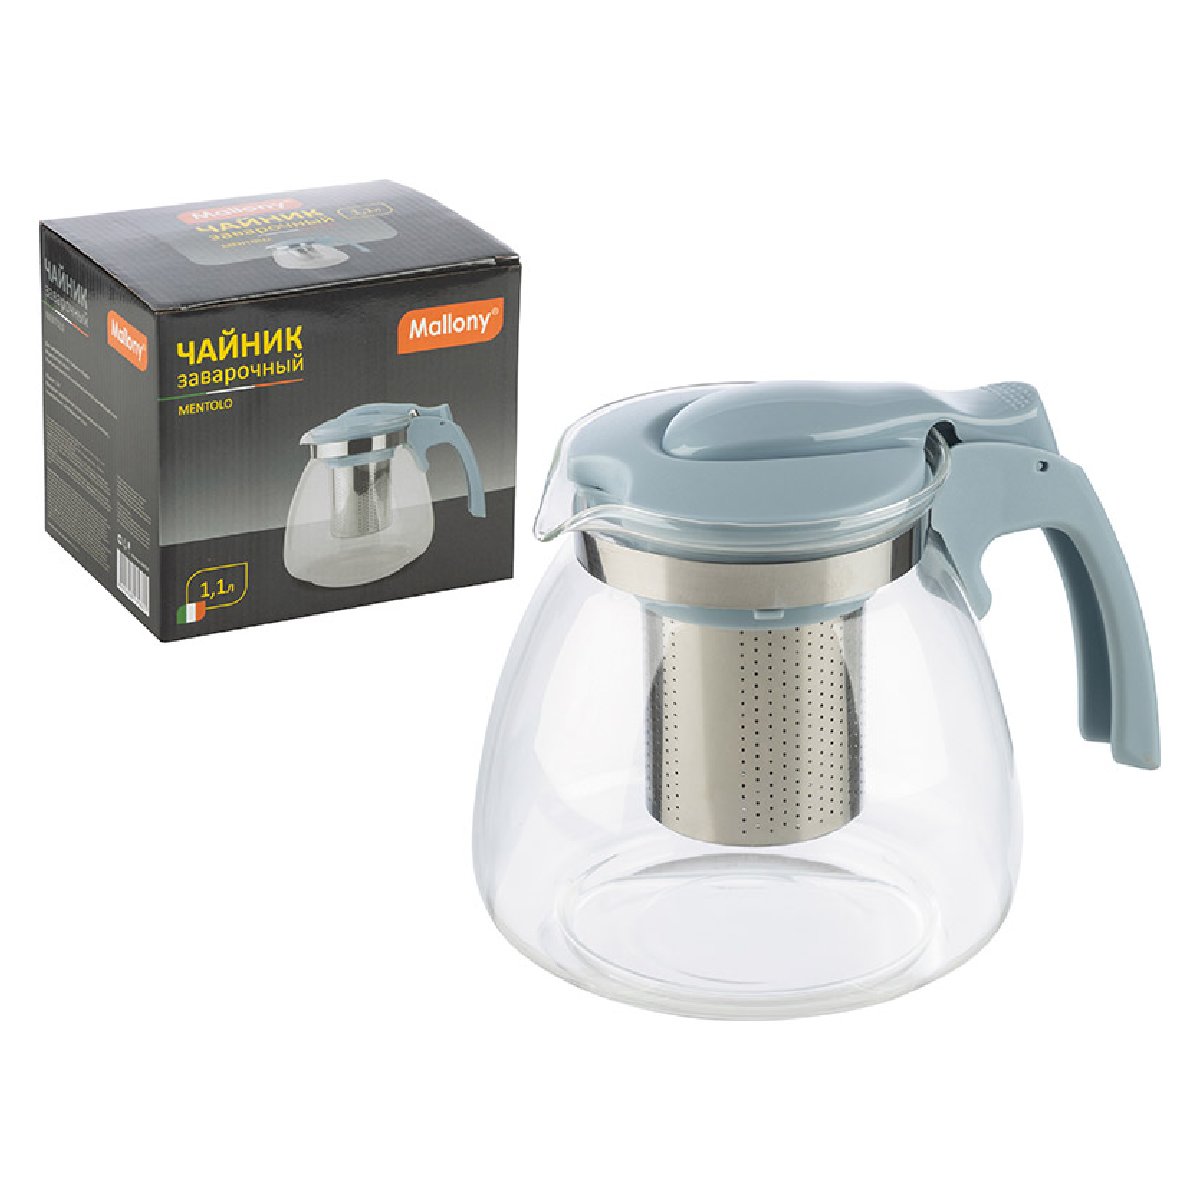 Чайник заварочный MENTOLO, объем 1,1 л, из жаропрочного стекла с фильтром из нерж стали (009354)Купить